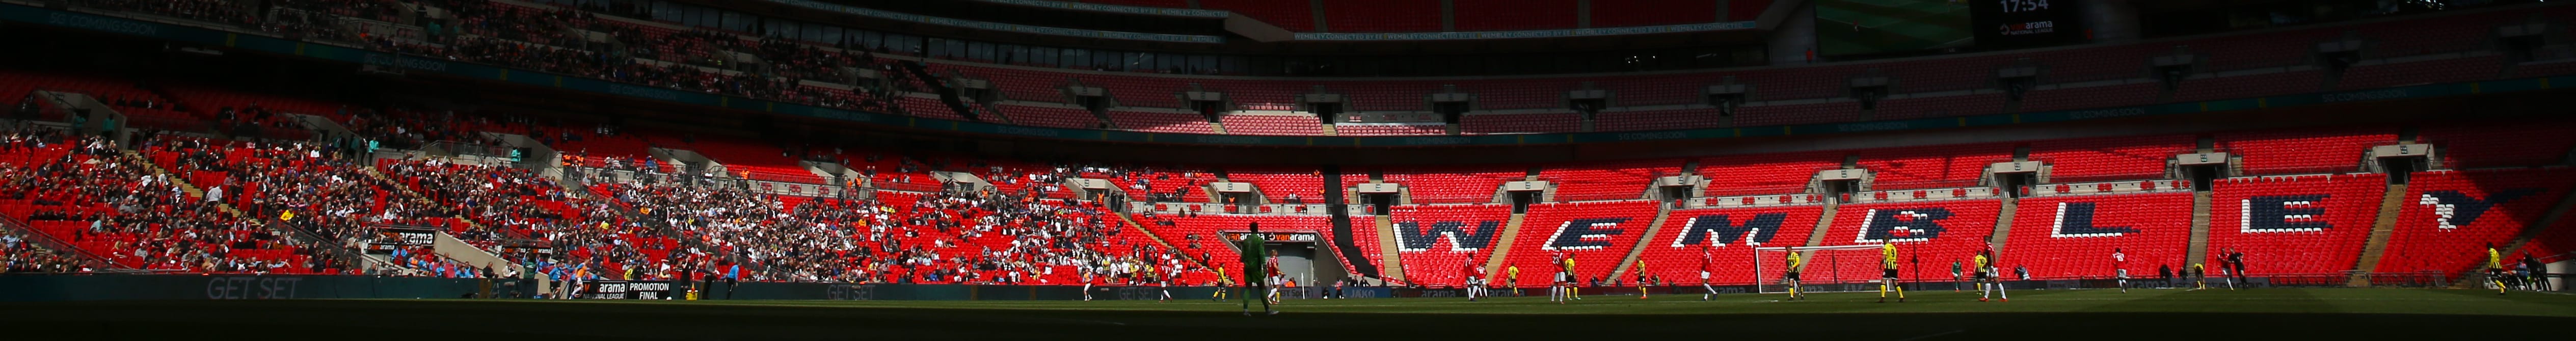 Τσάρλτον - Σάντερλαντ: Στο Wembley o τελικός ανόδου για την Championship!